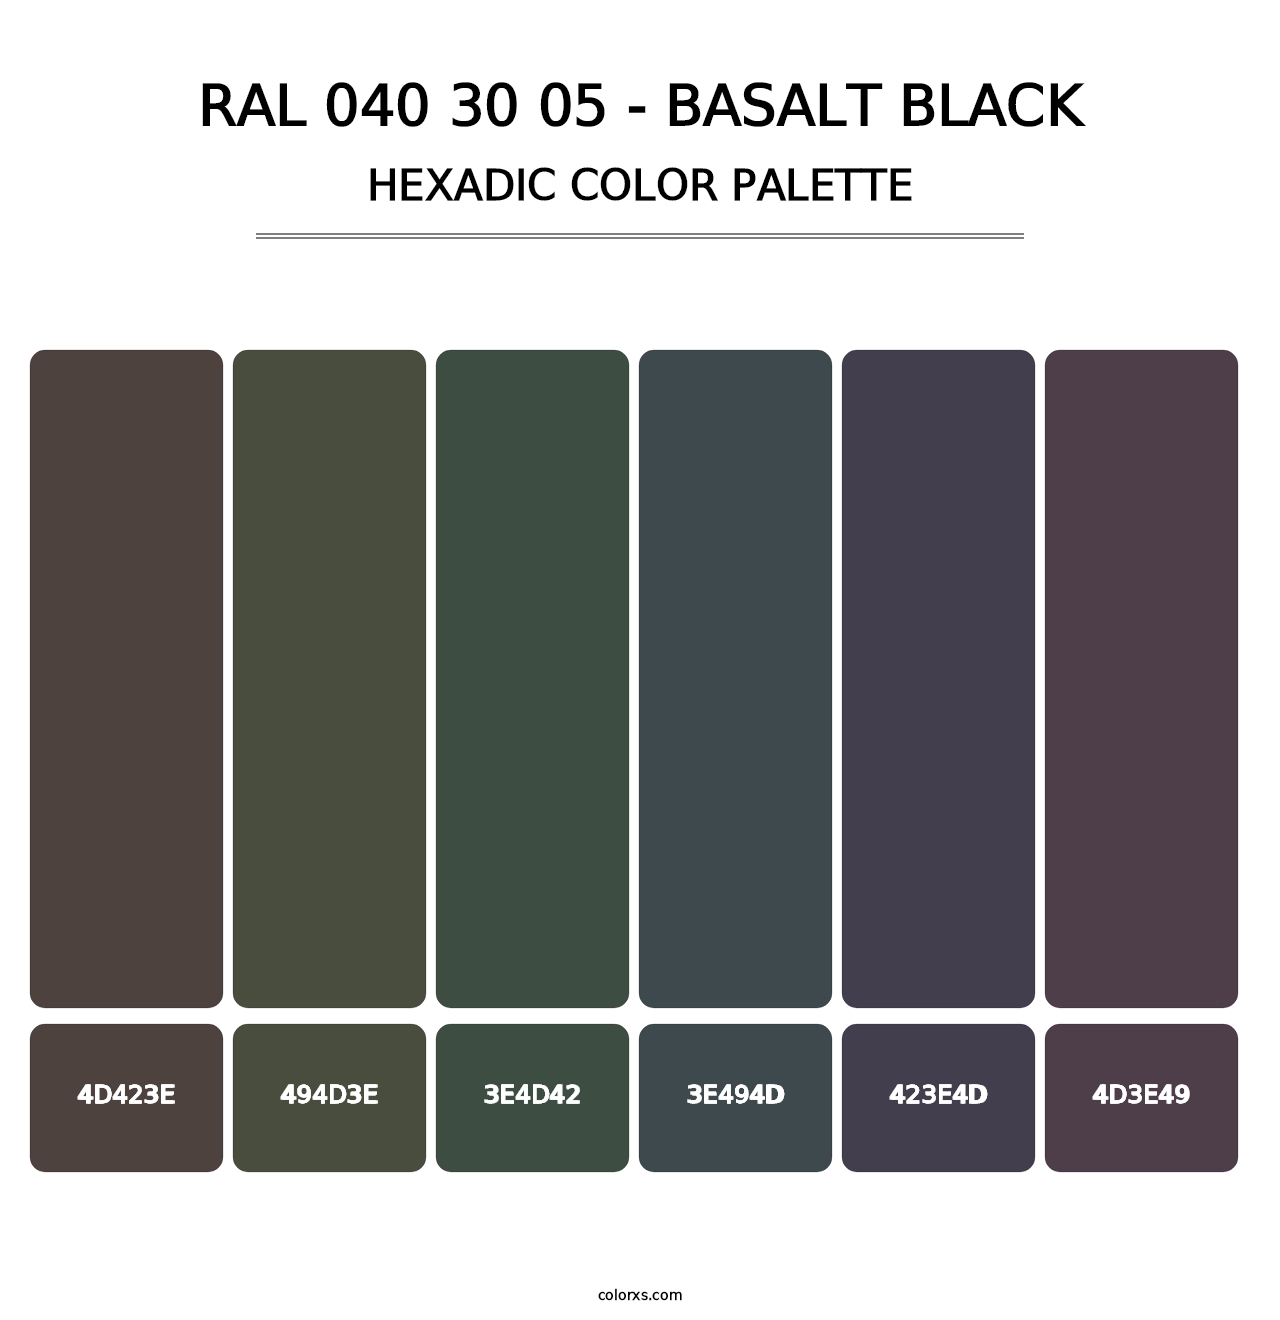 RAL 040 30 05 - Basalt Black - Hexadic Color Palette